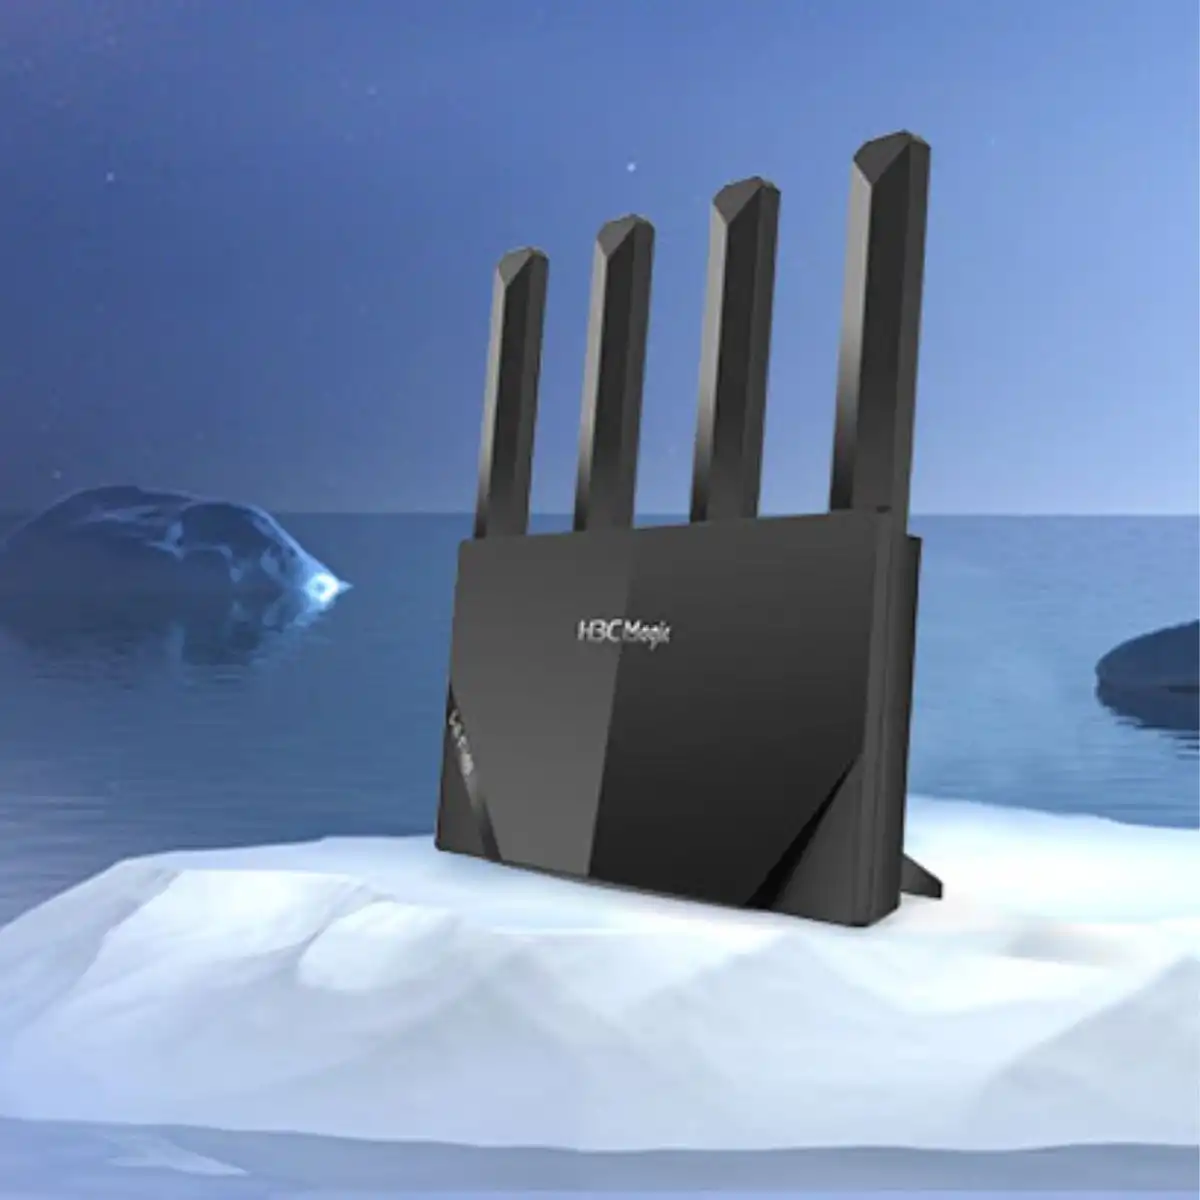 Router Wi-Fi 6 băng tần kép Gigabit H3C Magic NX15 tốc độ 1500Mbps, Kết nối đến 127 thiết bị